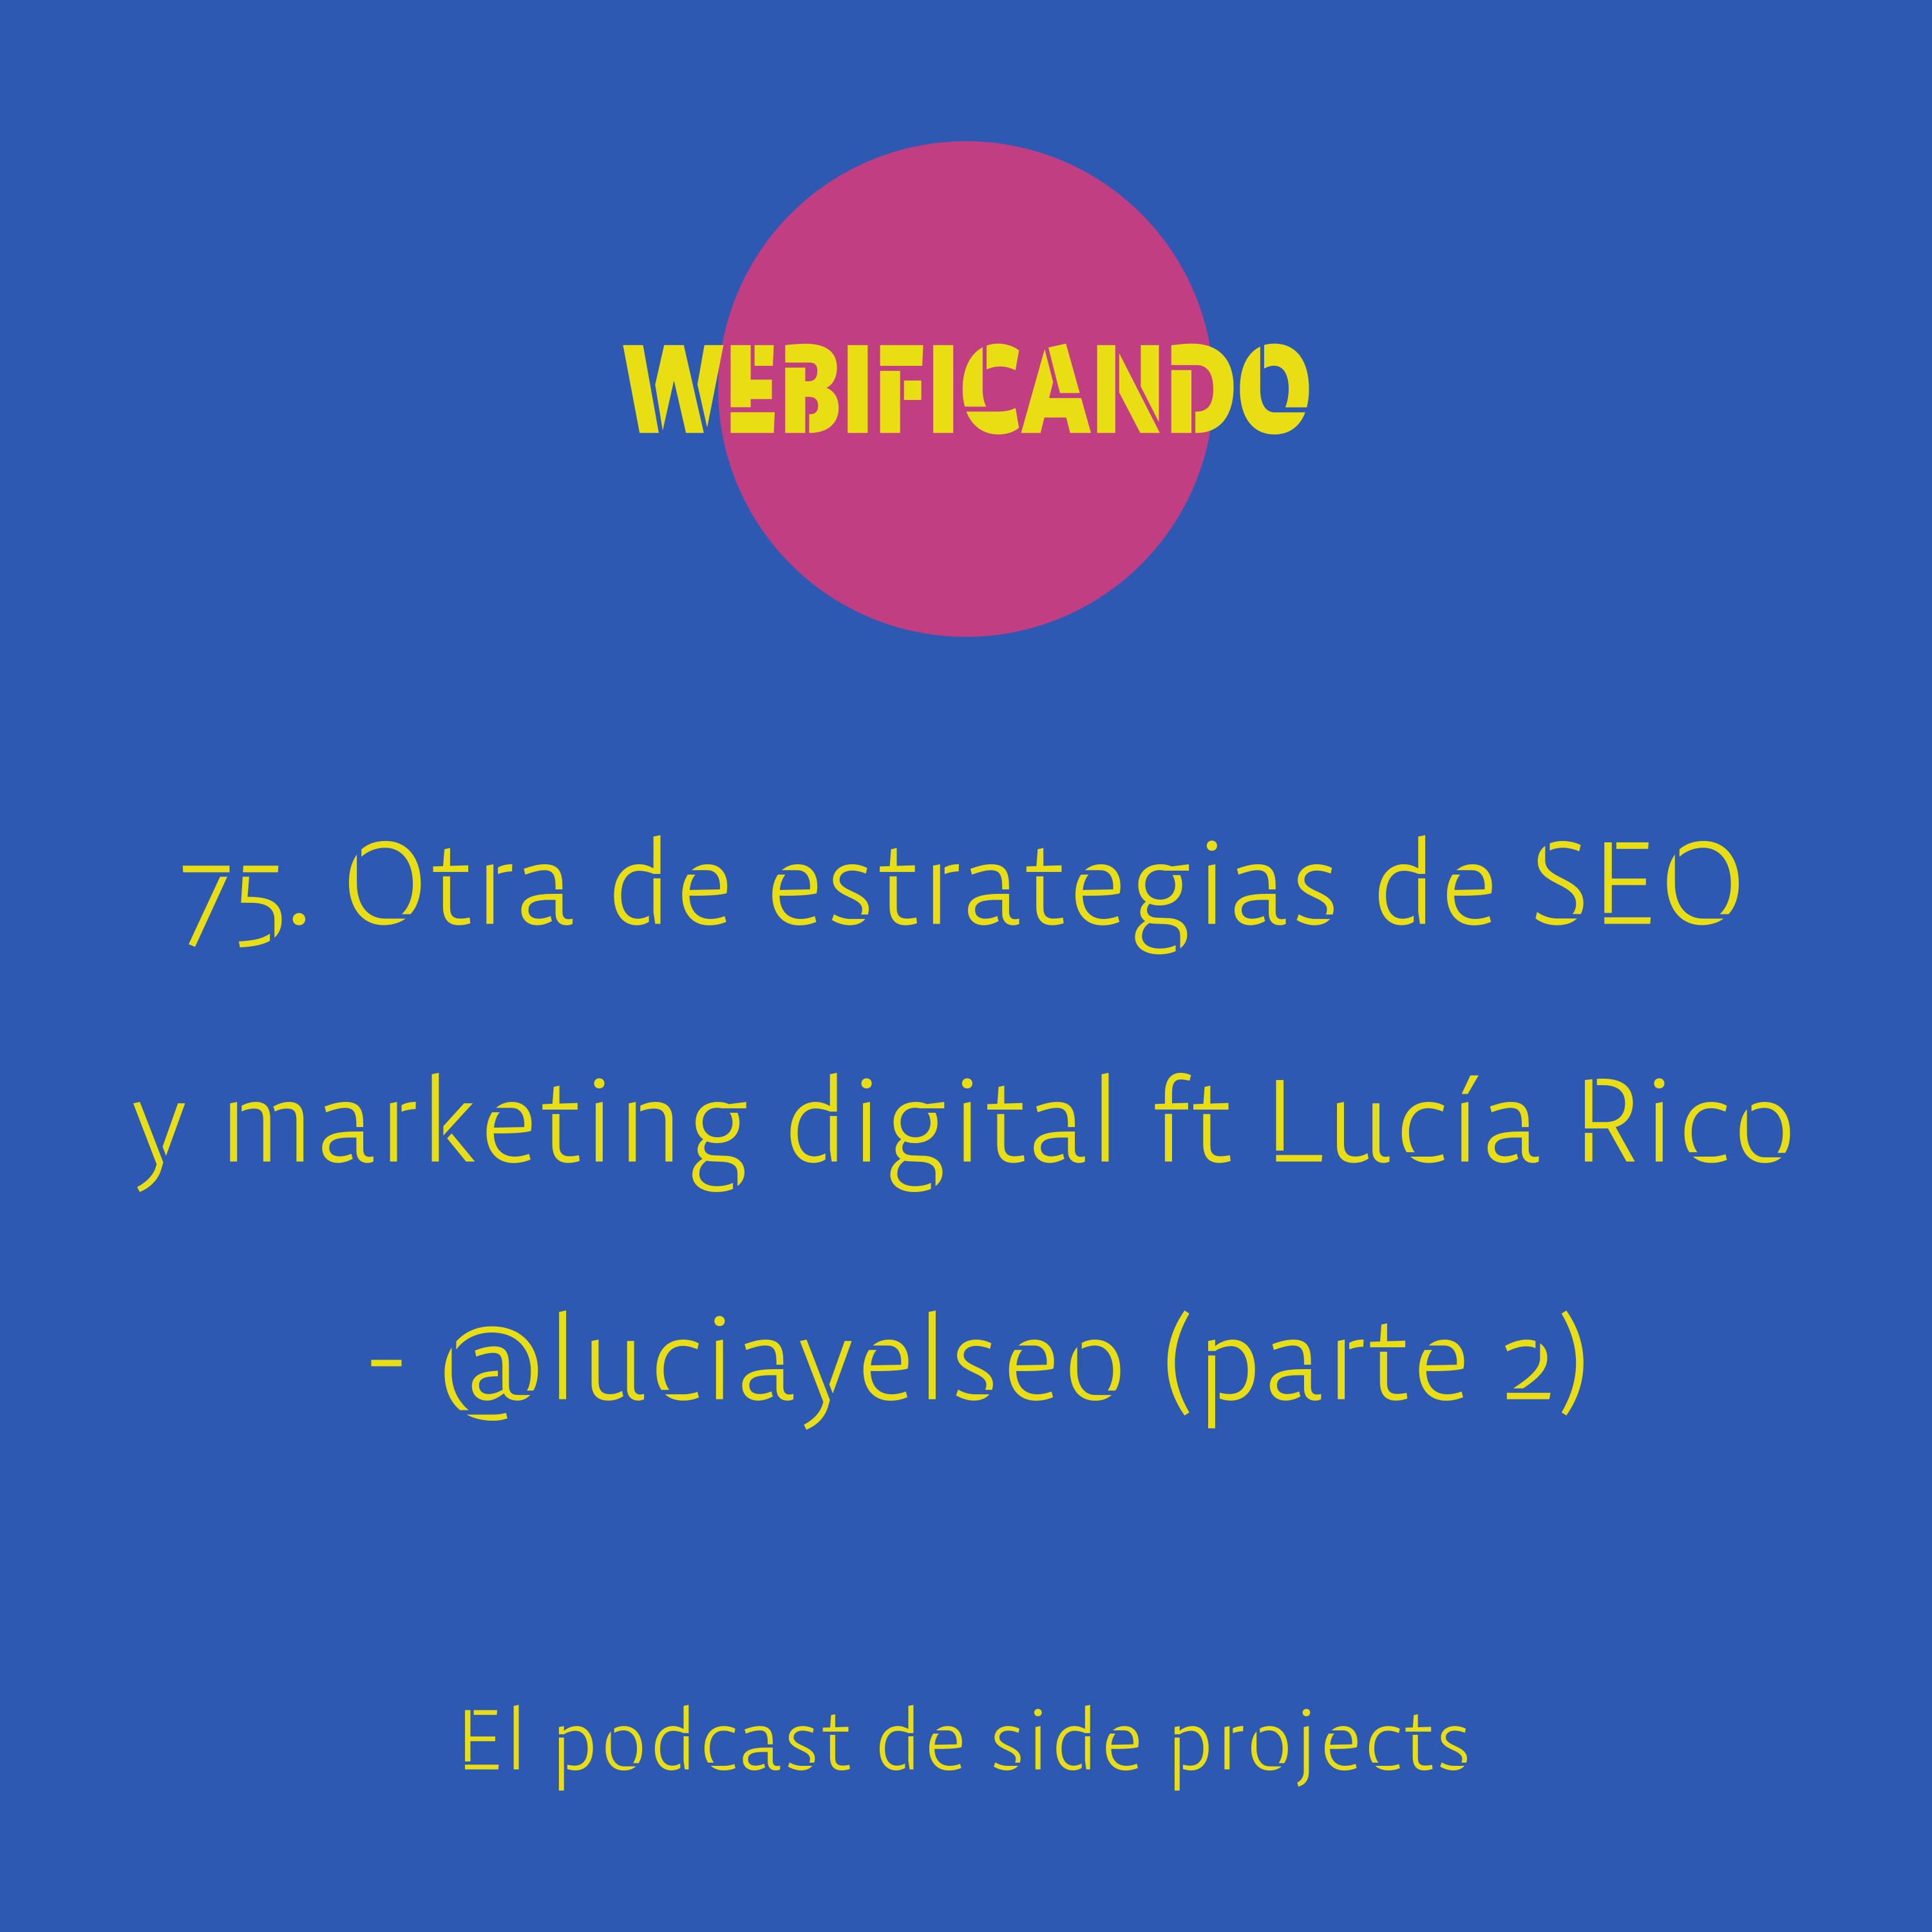 75. Otra de estrategias de SEO y marketing digital con Lucía Rico – @luciayelseo (parte 2)